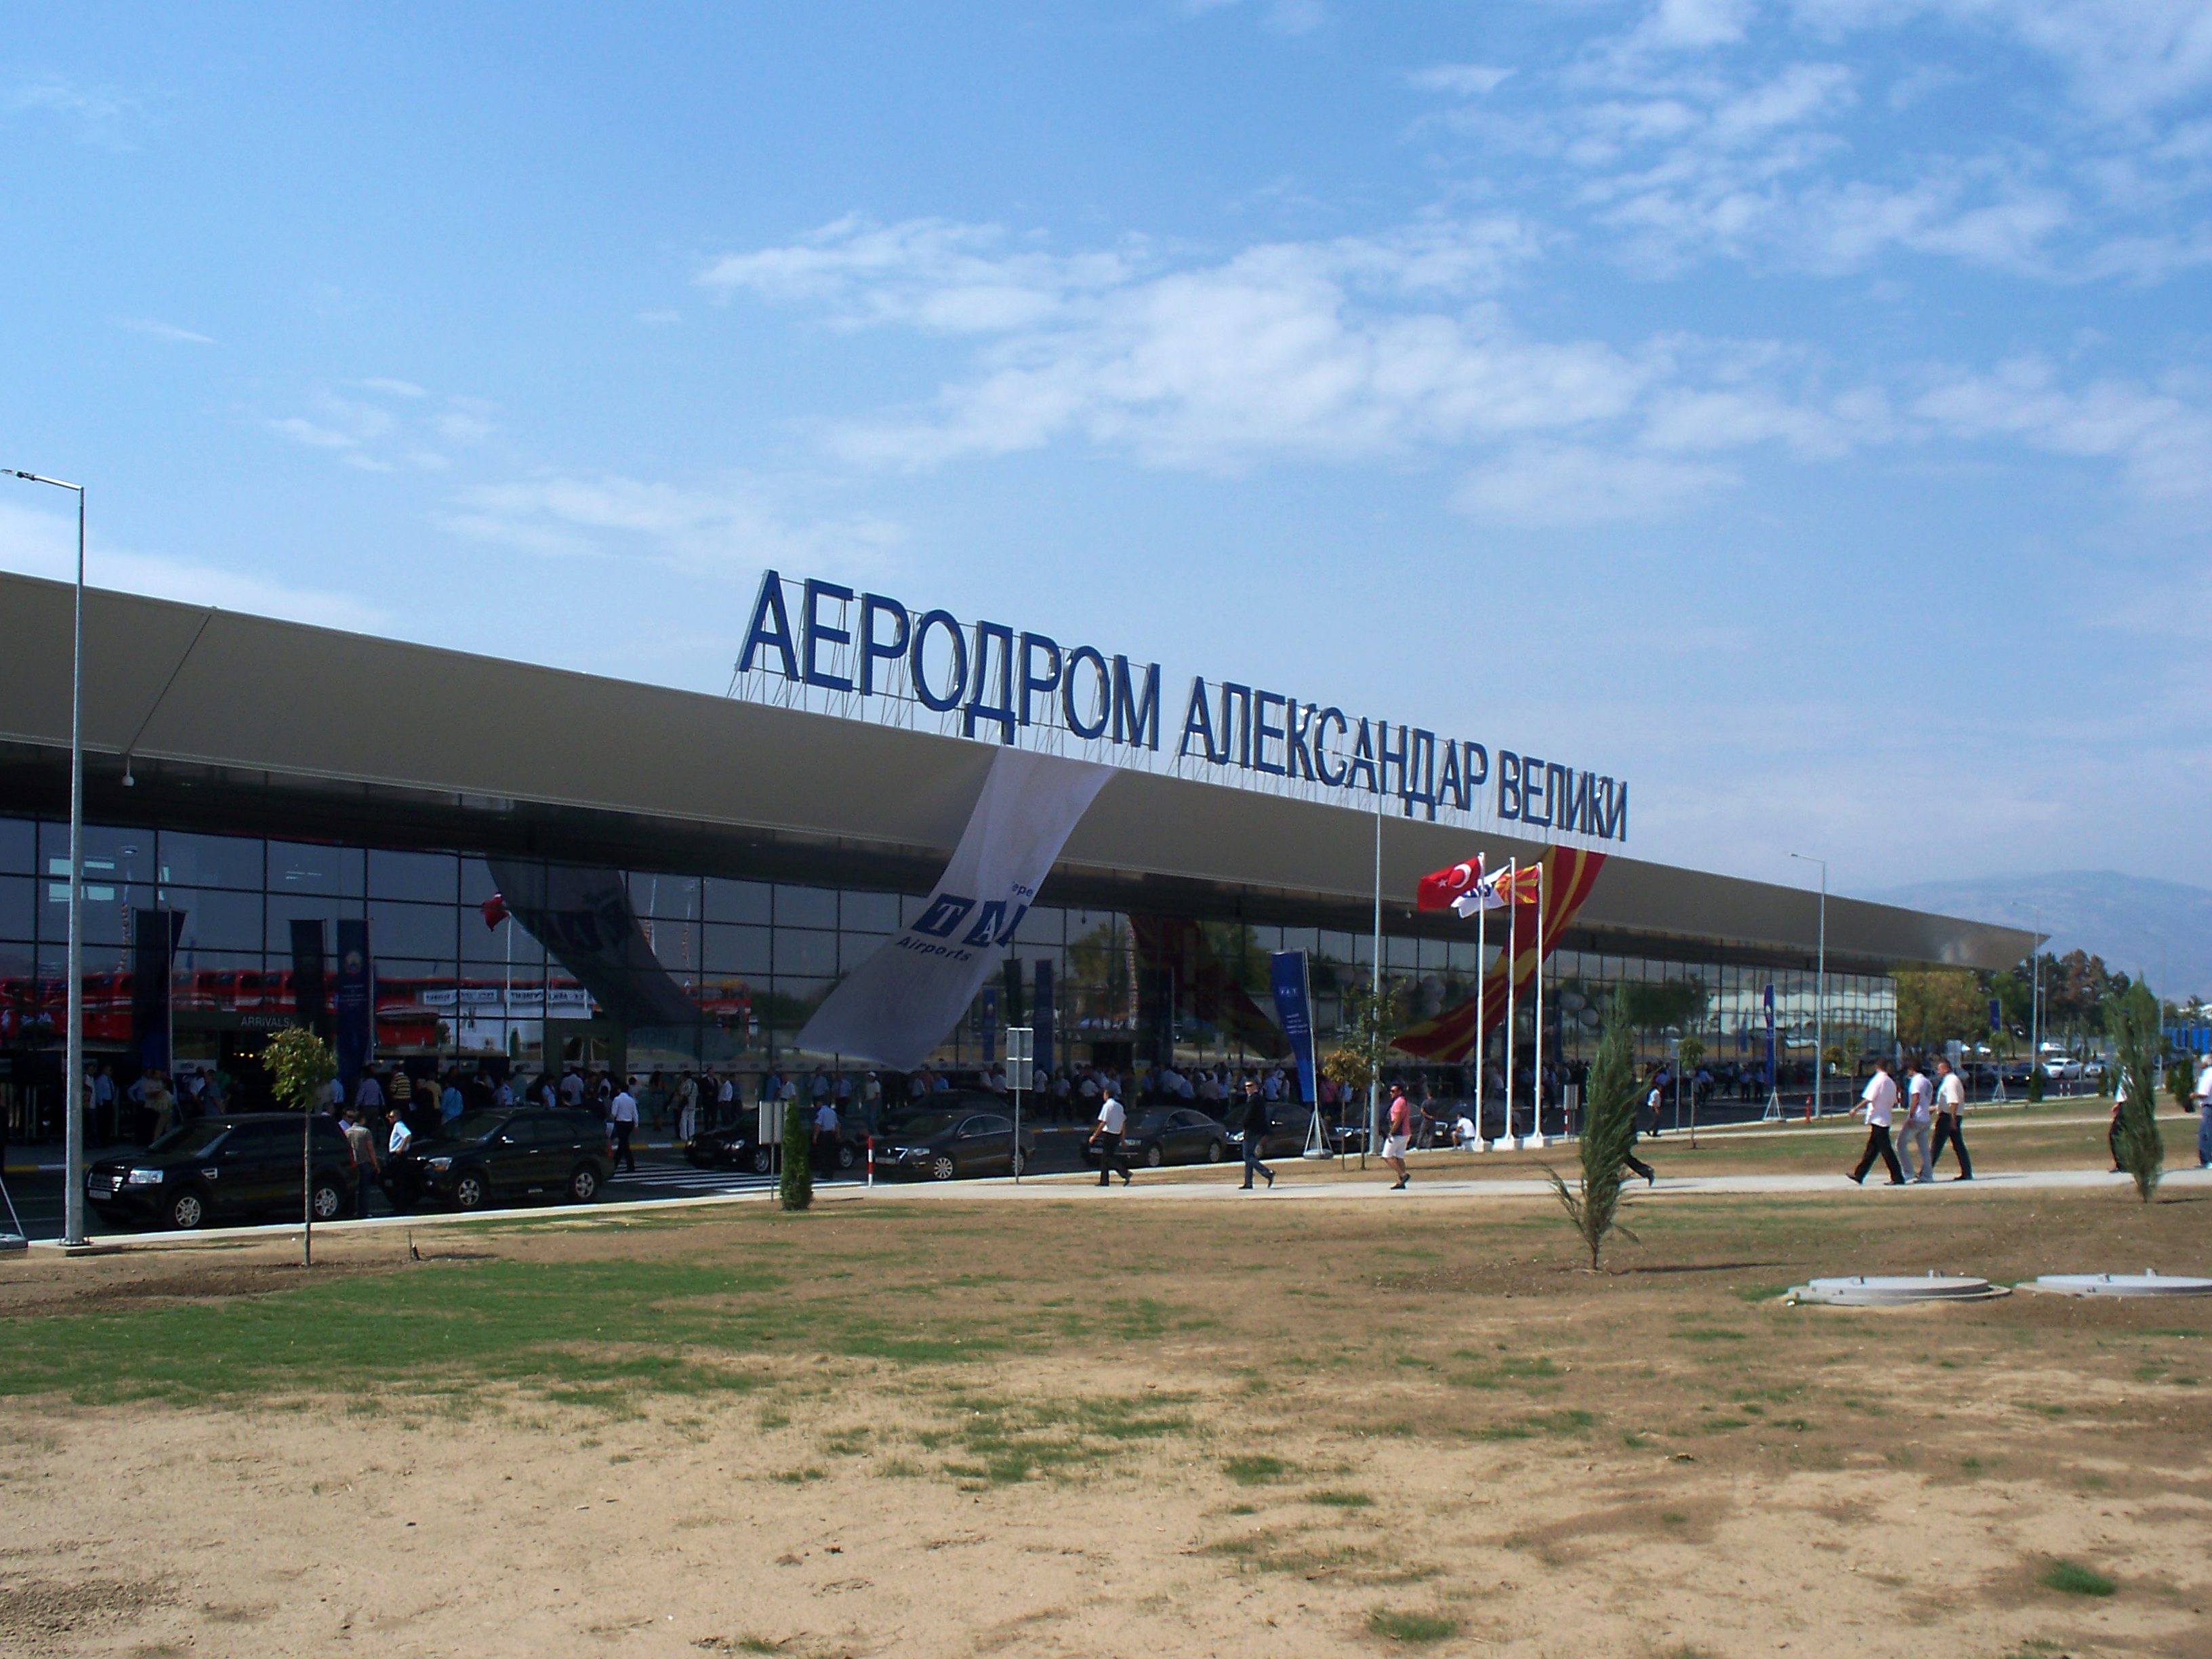 Skopje Alexander the Great Airport